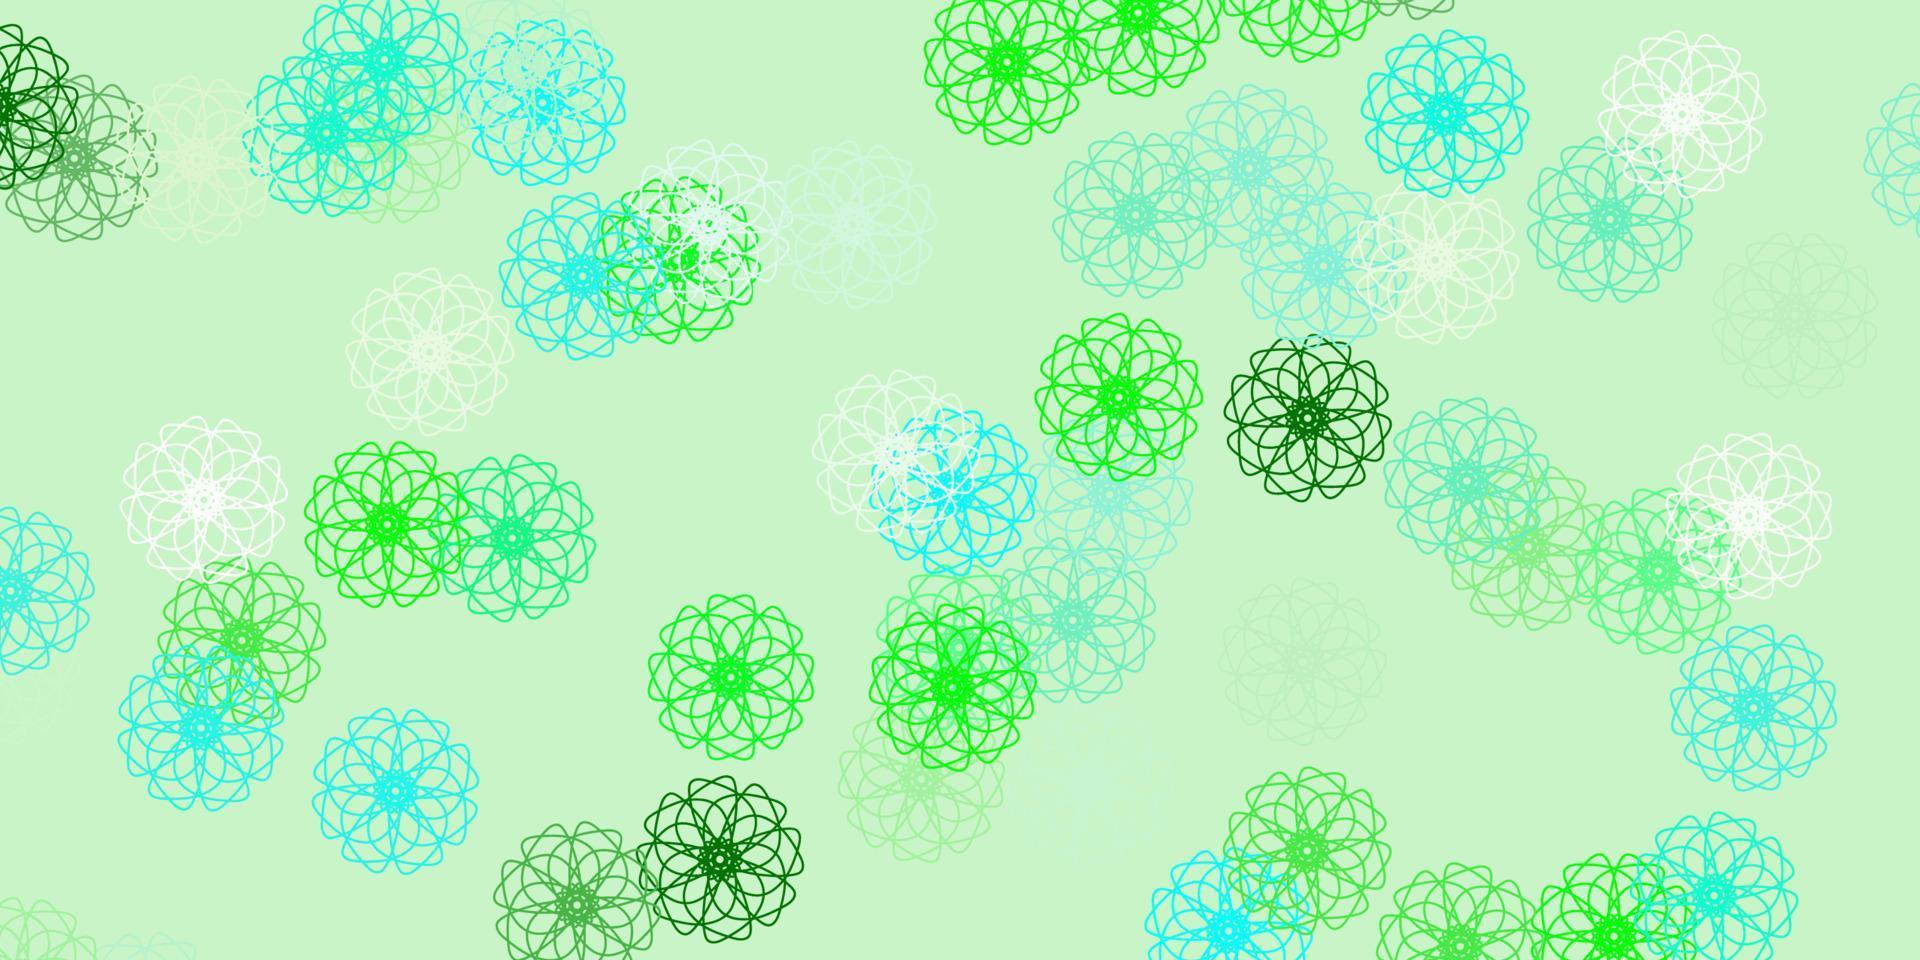 modèle de doodle de vecteur bleu clair, vert avec des fleurs.